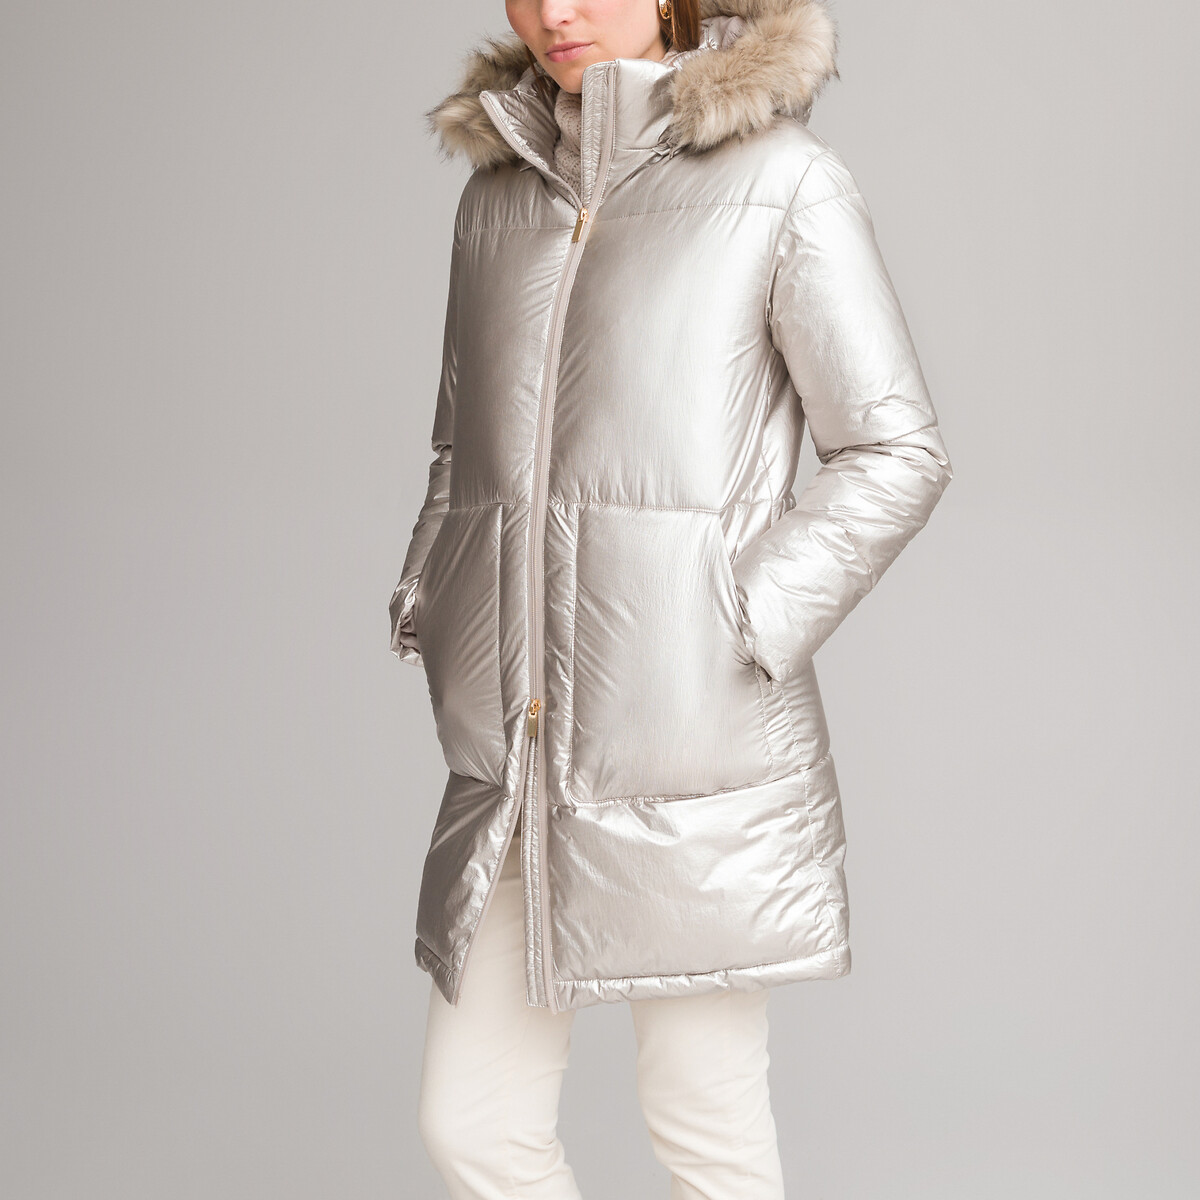 Куртка стеганая зимняя средней длины съемный капюшон 54 (FR) - 60 (RUS) серый куртка evacana зимняя средней длины карманы регулируемый капюшон размер 42 зеленый